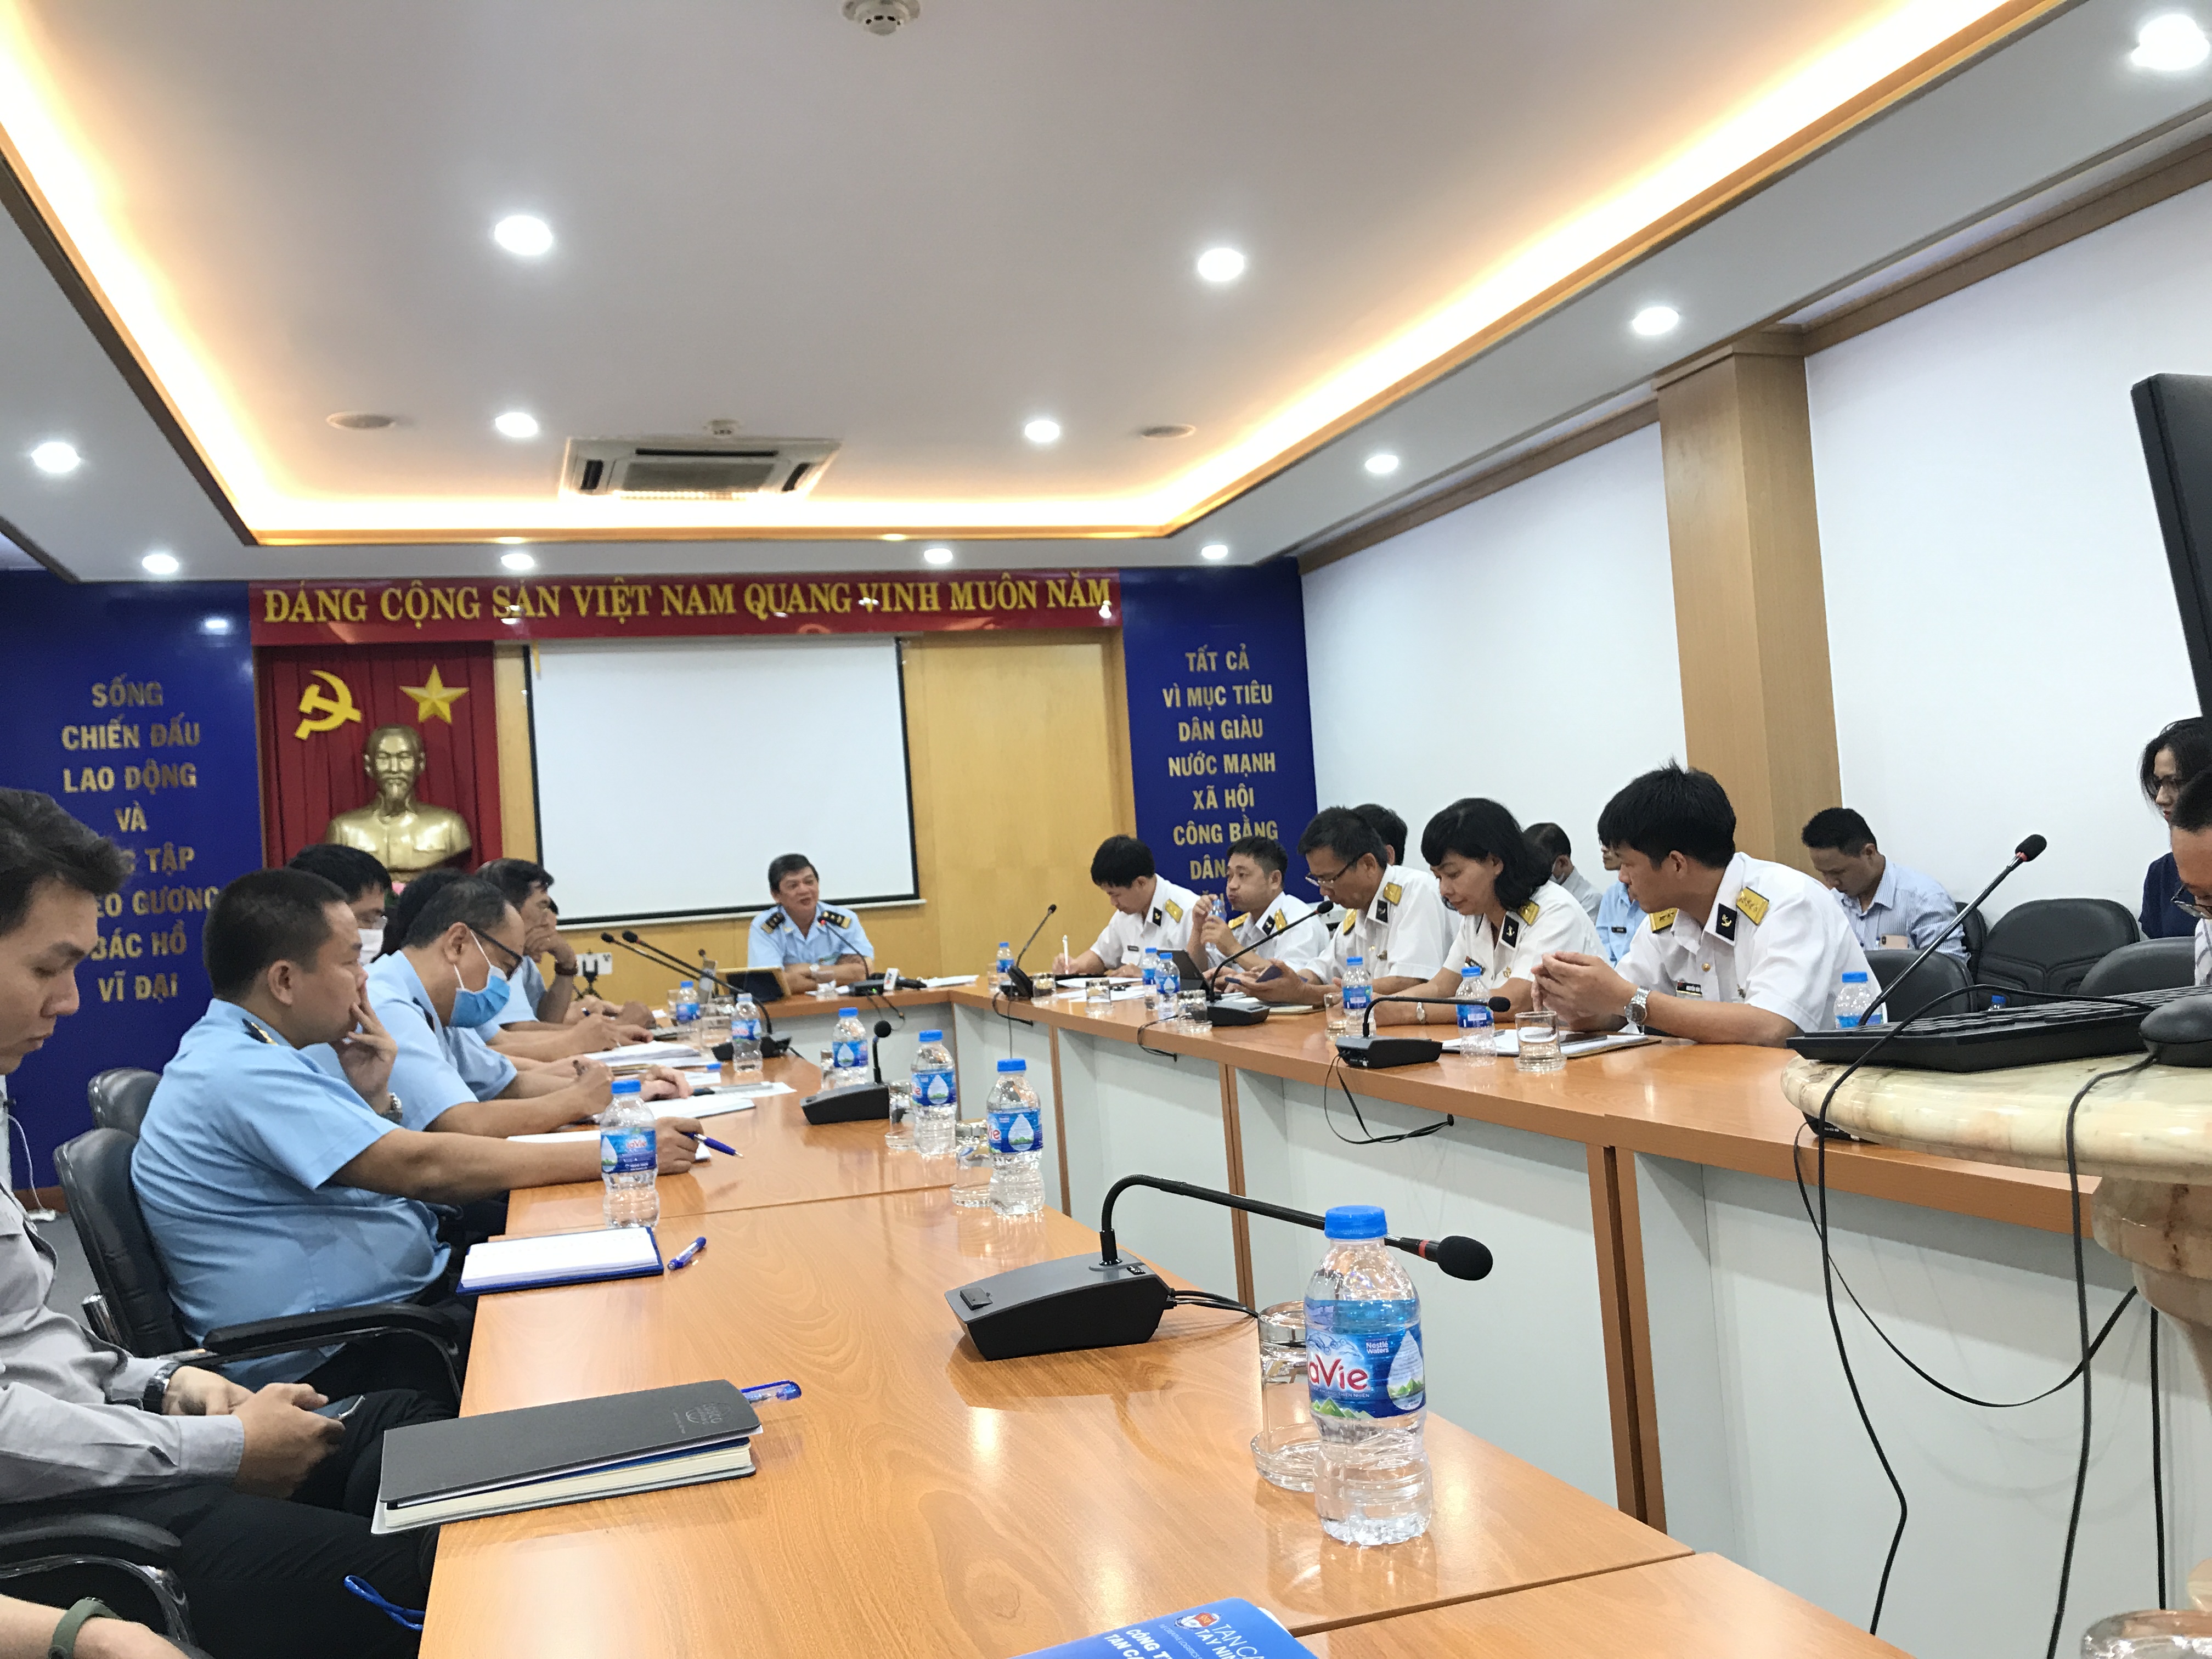 Phó Cục trưởng Cục Hải quan TP. Hồ Chí Minh Nguyễn Hữu Nghiệp chủ trì cuộc đối thoại